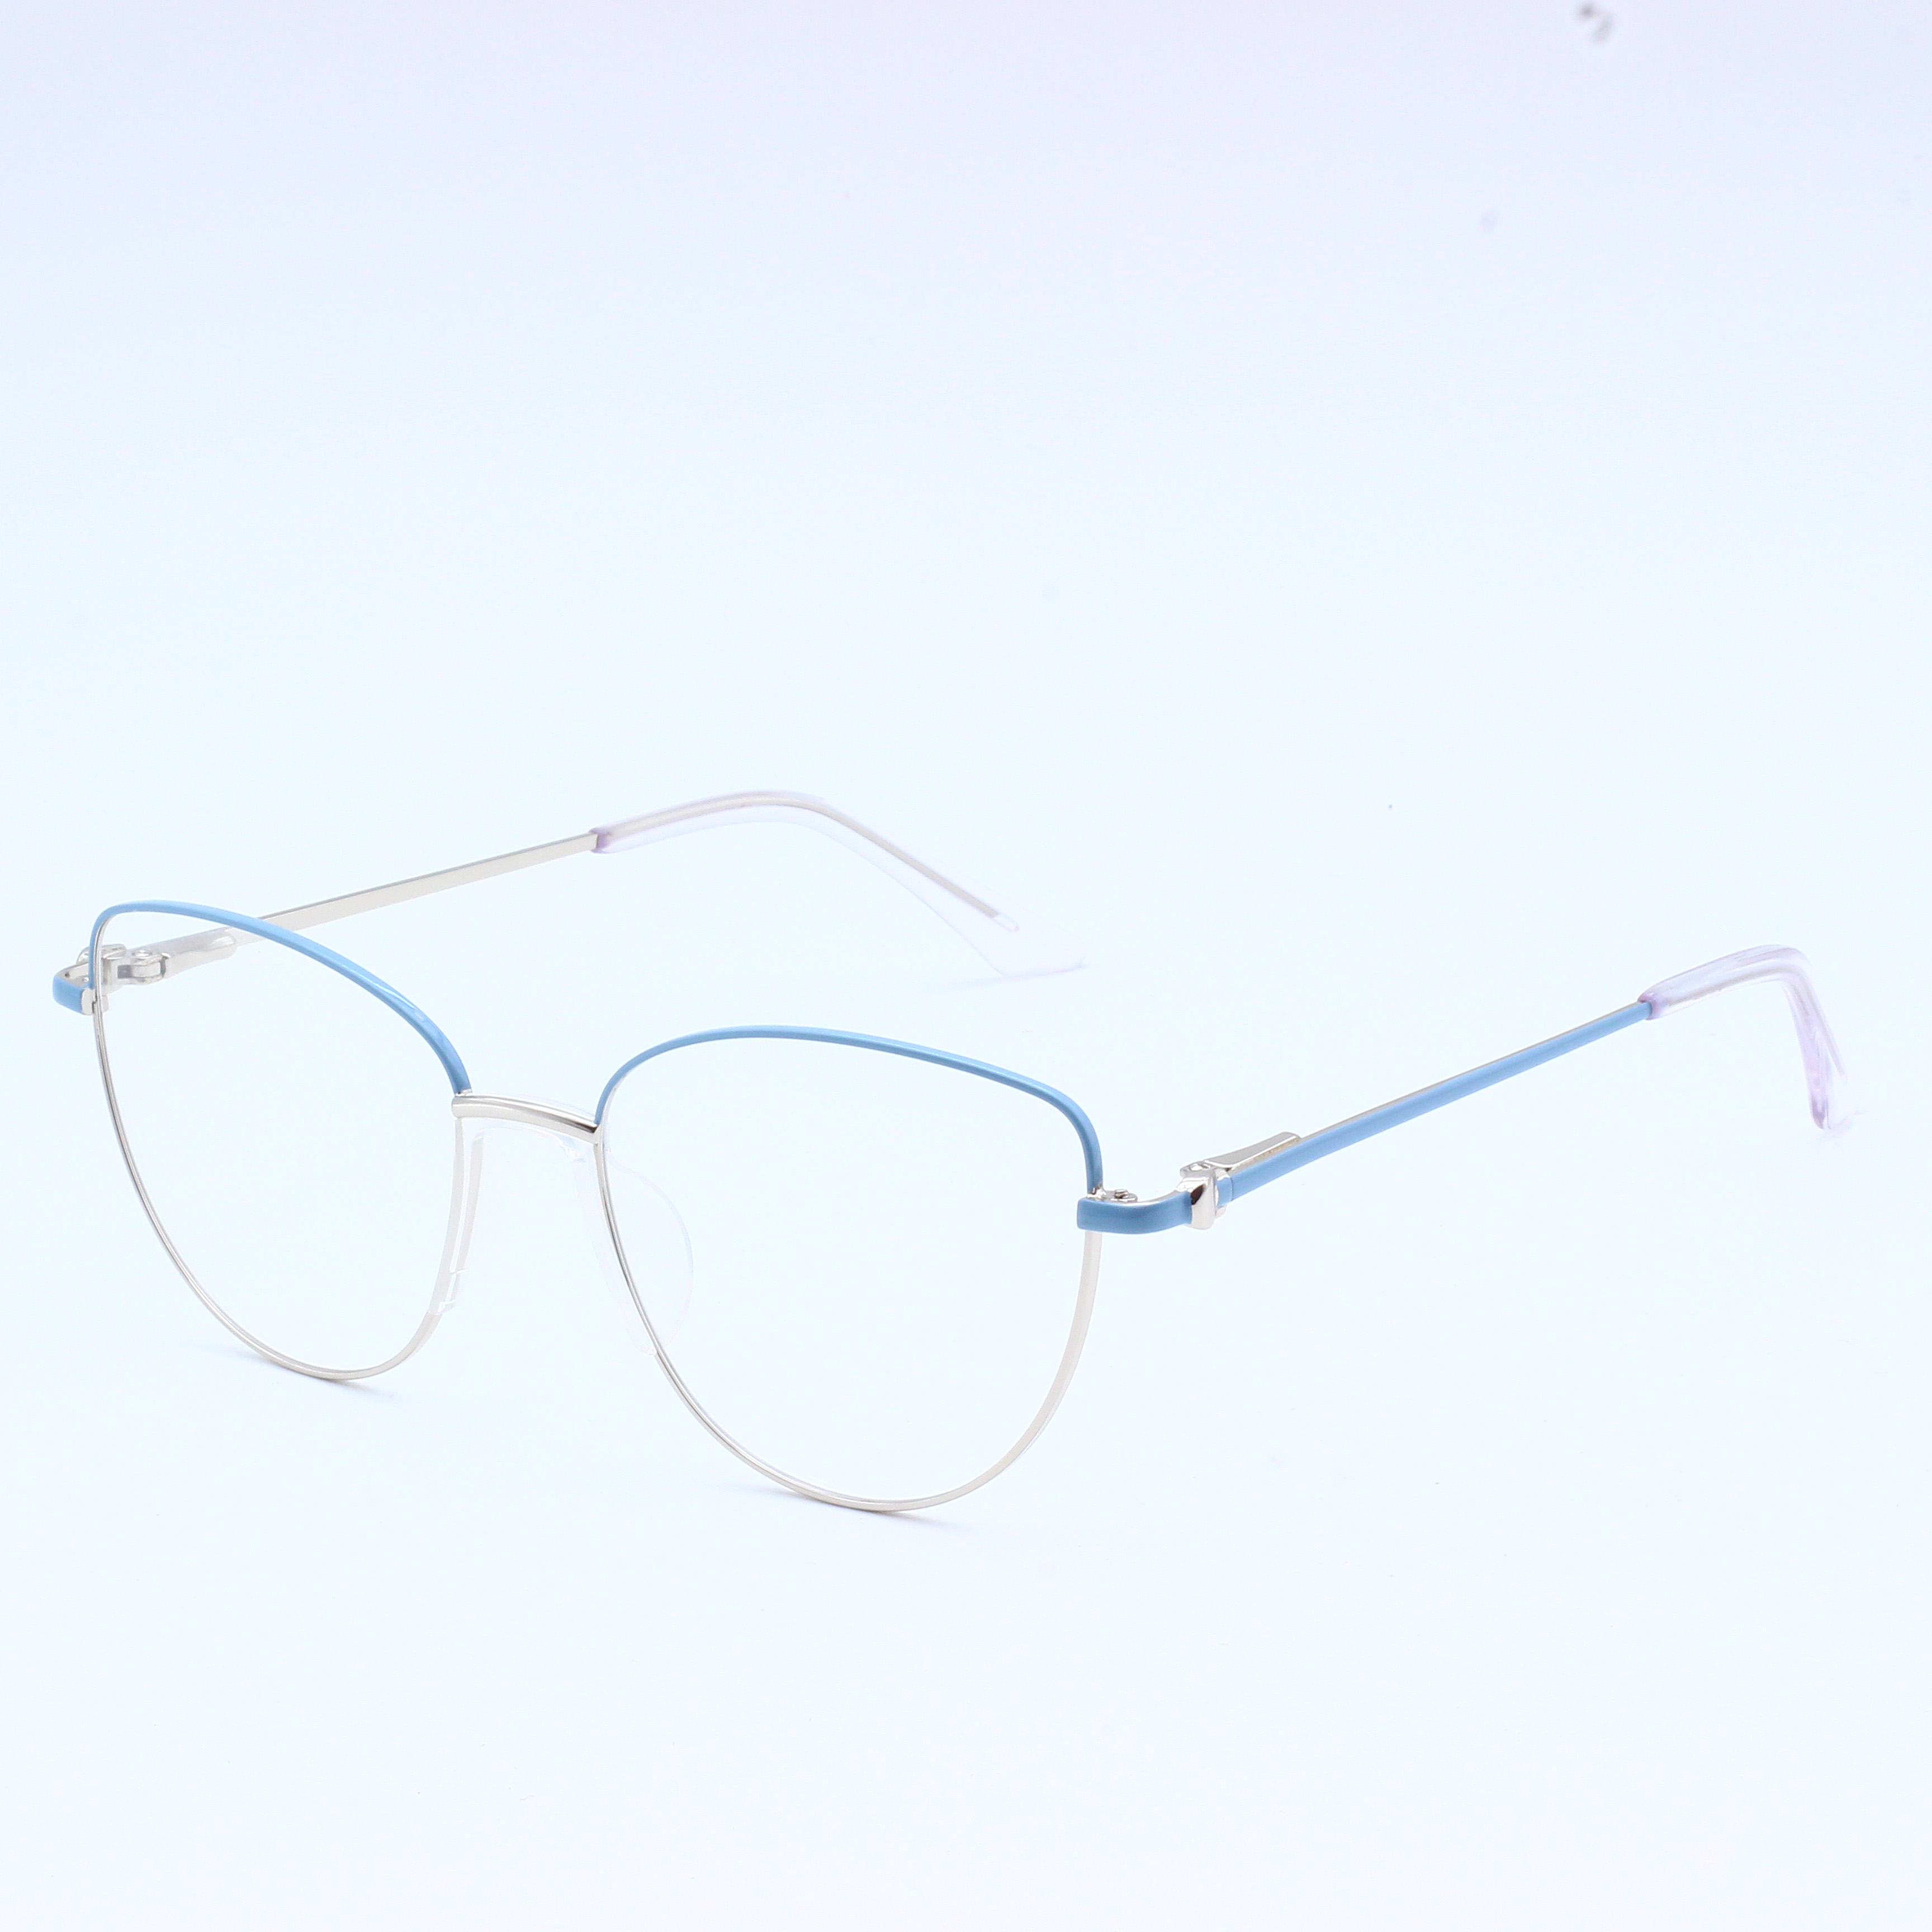 Cheap price frame metal eyewear frame stock ready Optical (6)